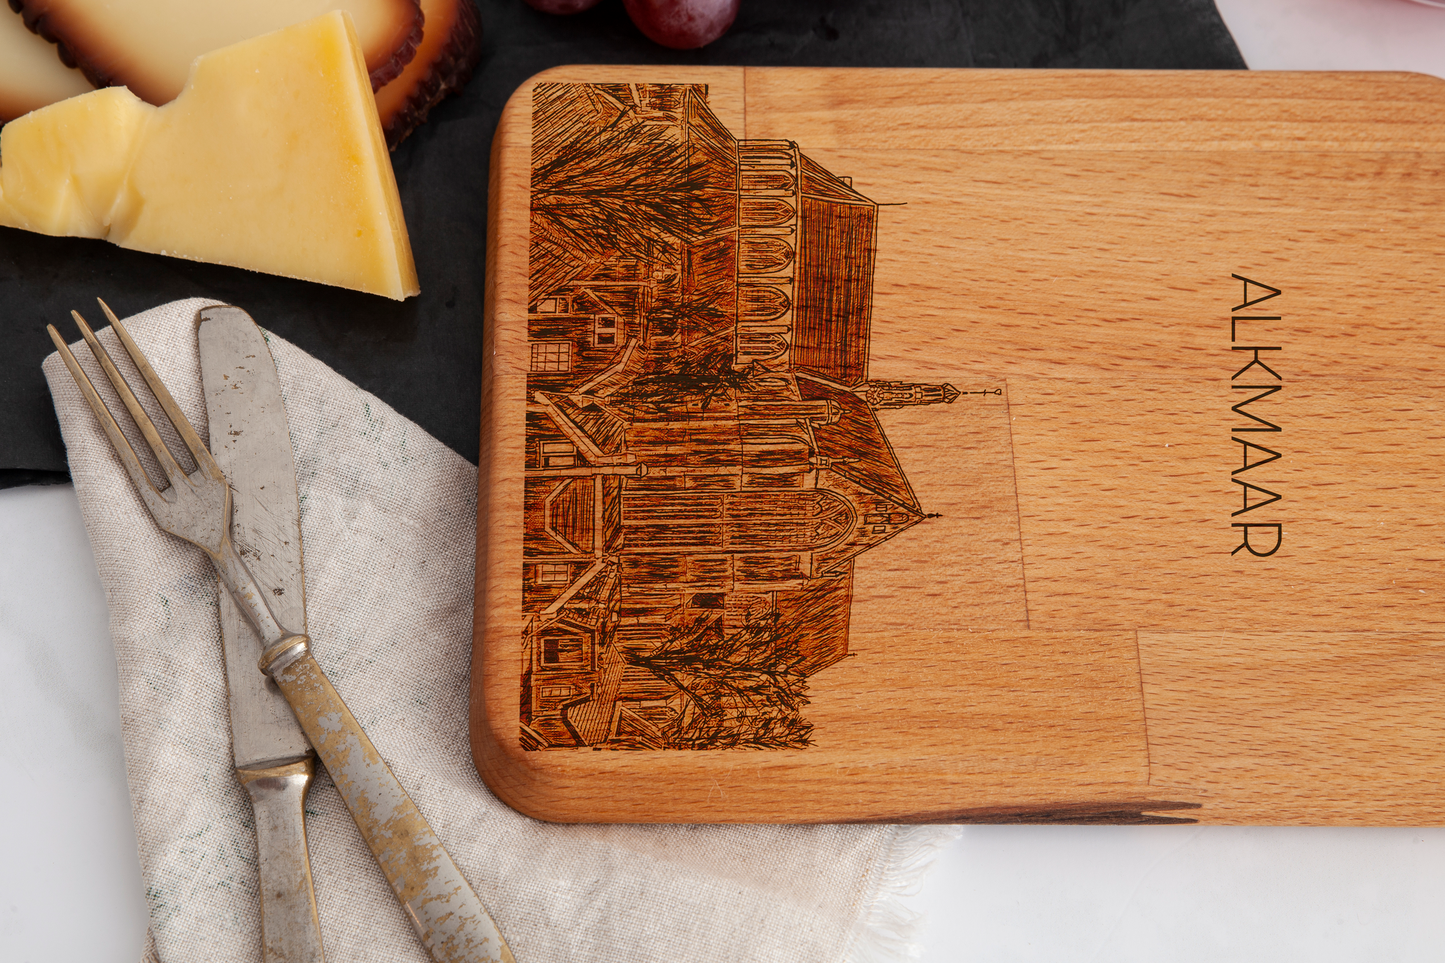 Alkmaar, Grote Kerk, cheese board, wood grain